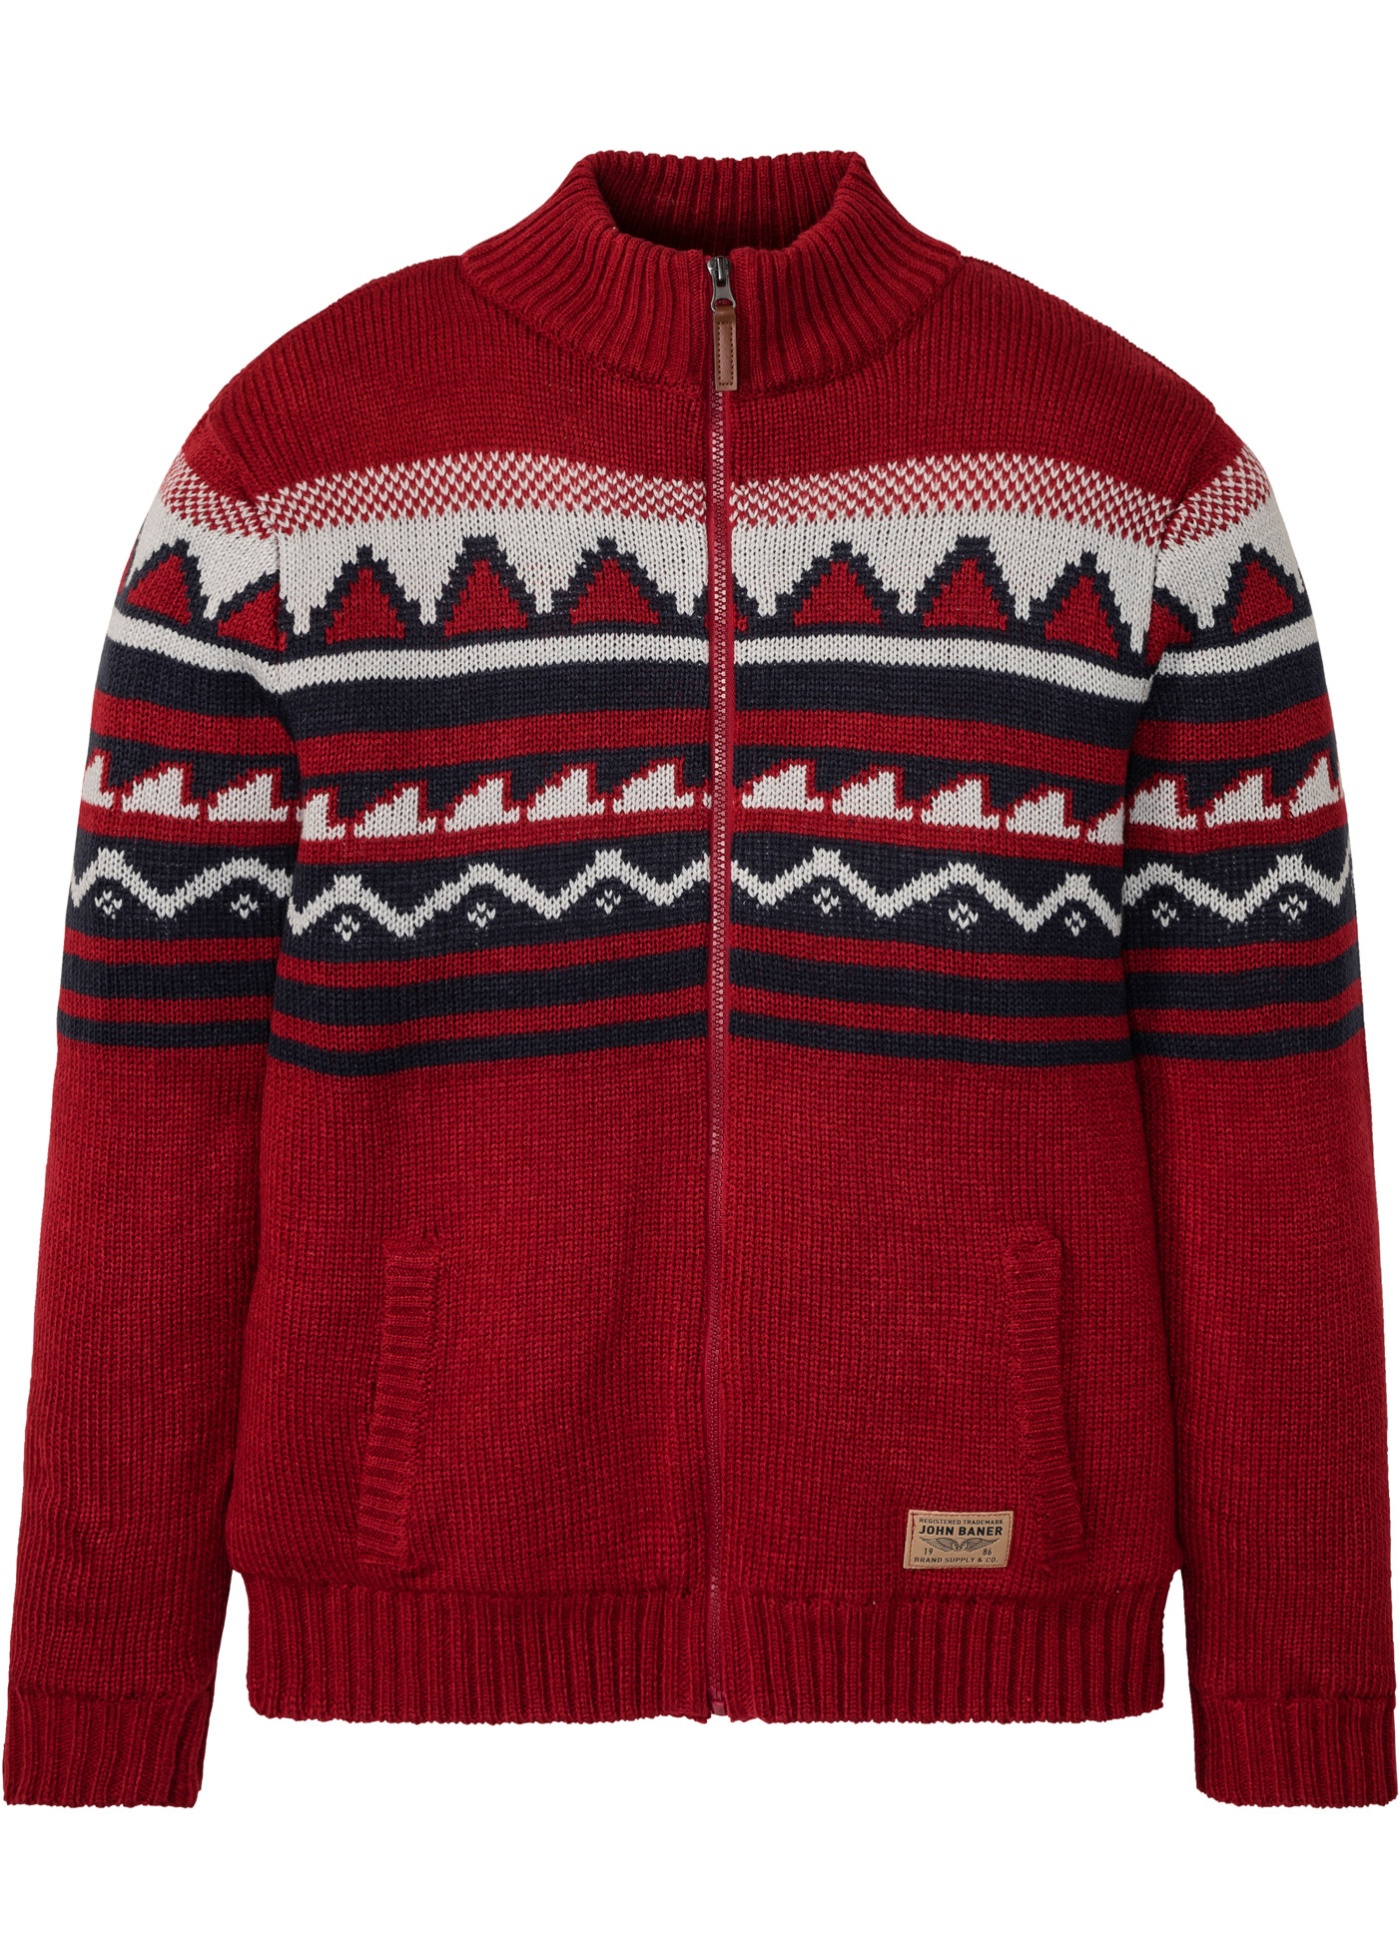 Sweter rozpinany w norweski wzór, na podszewce baranku Bonprix